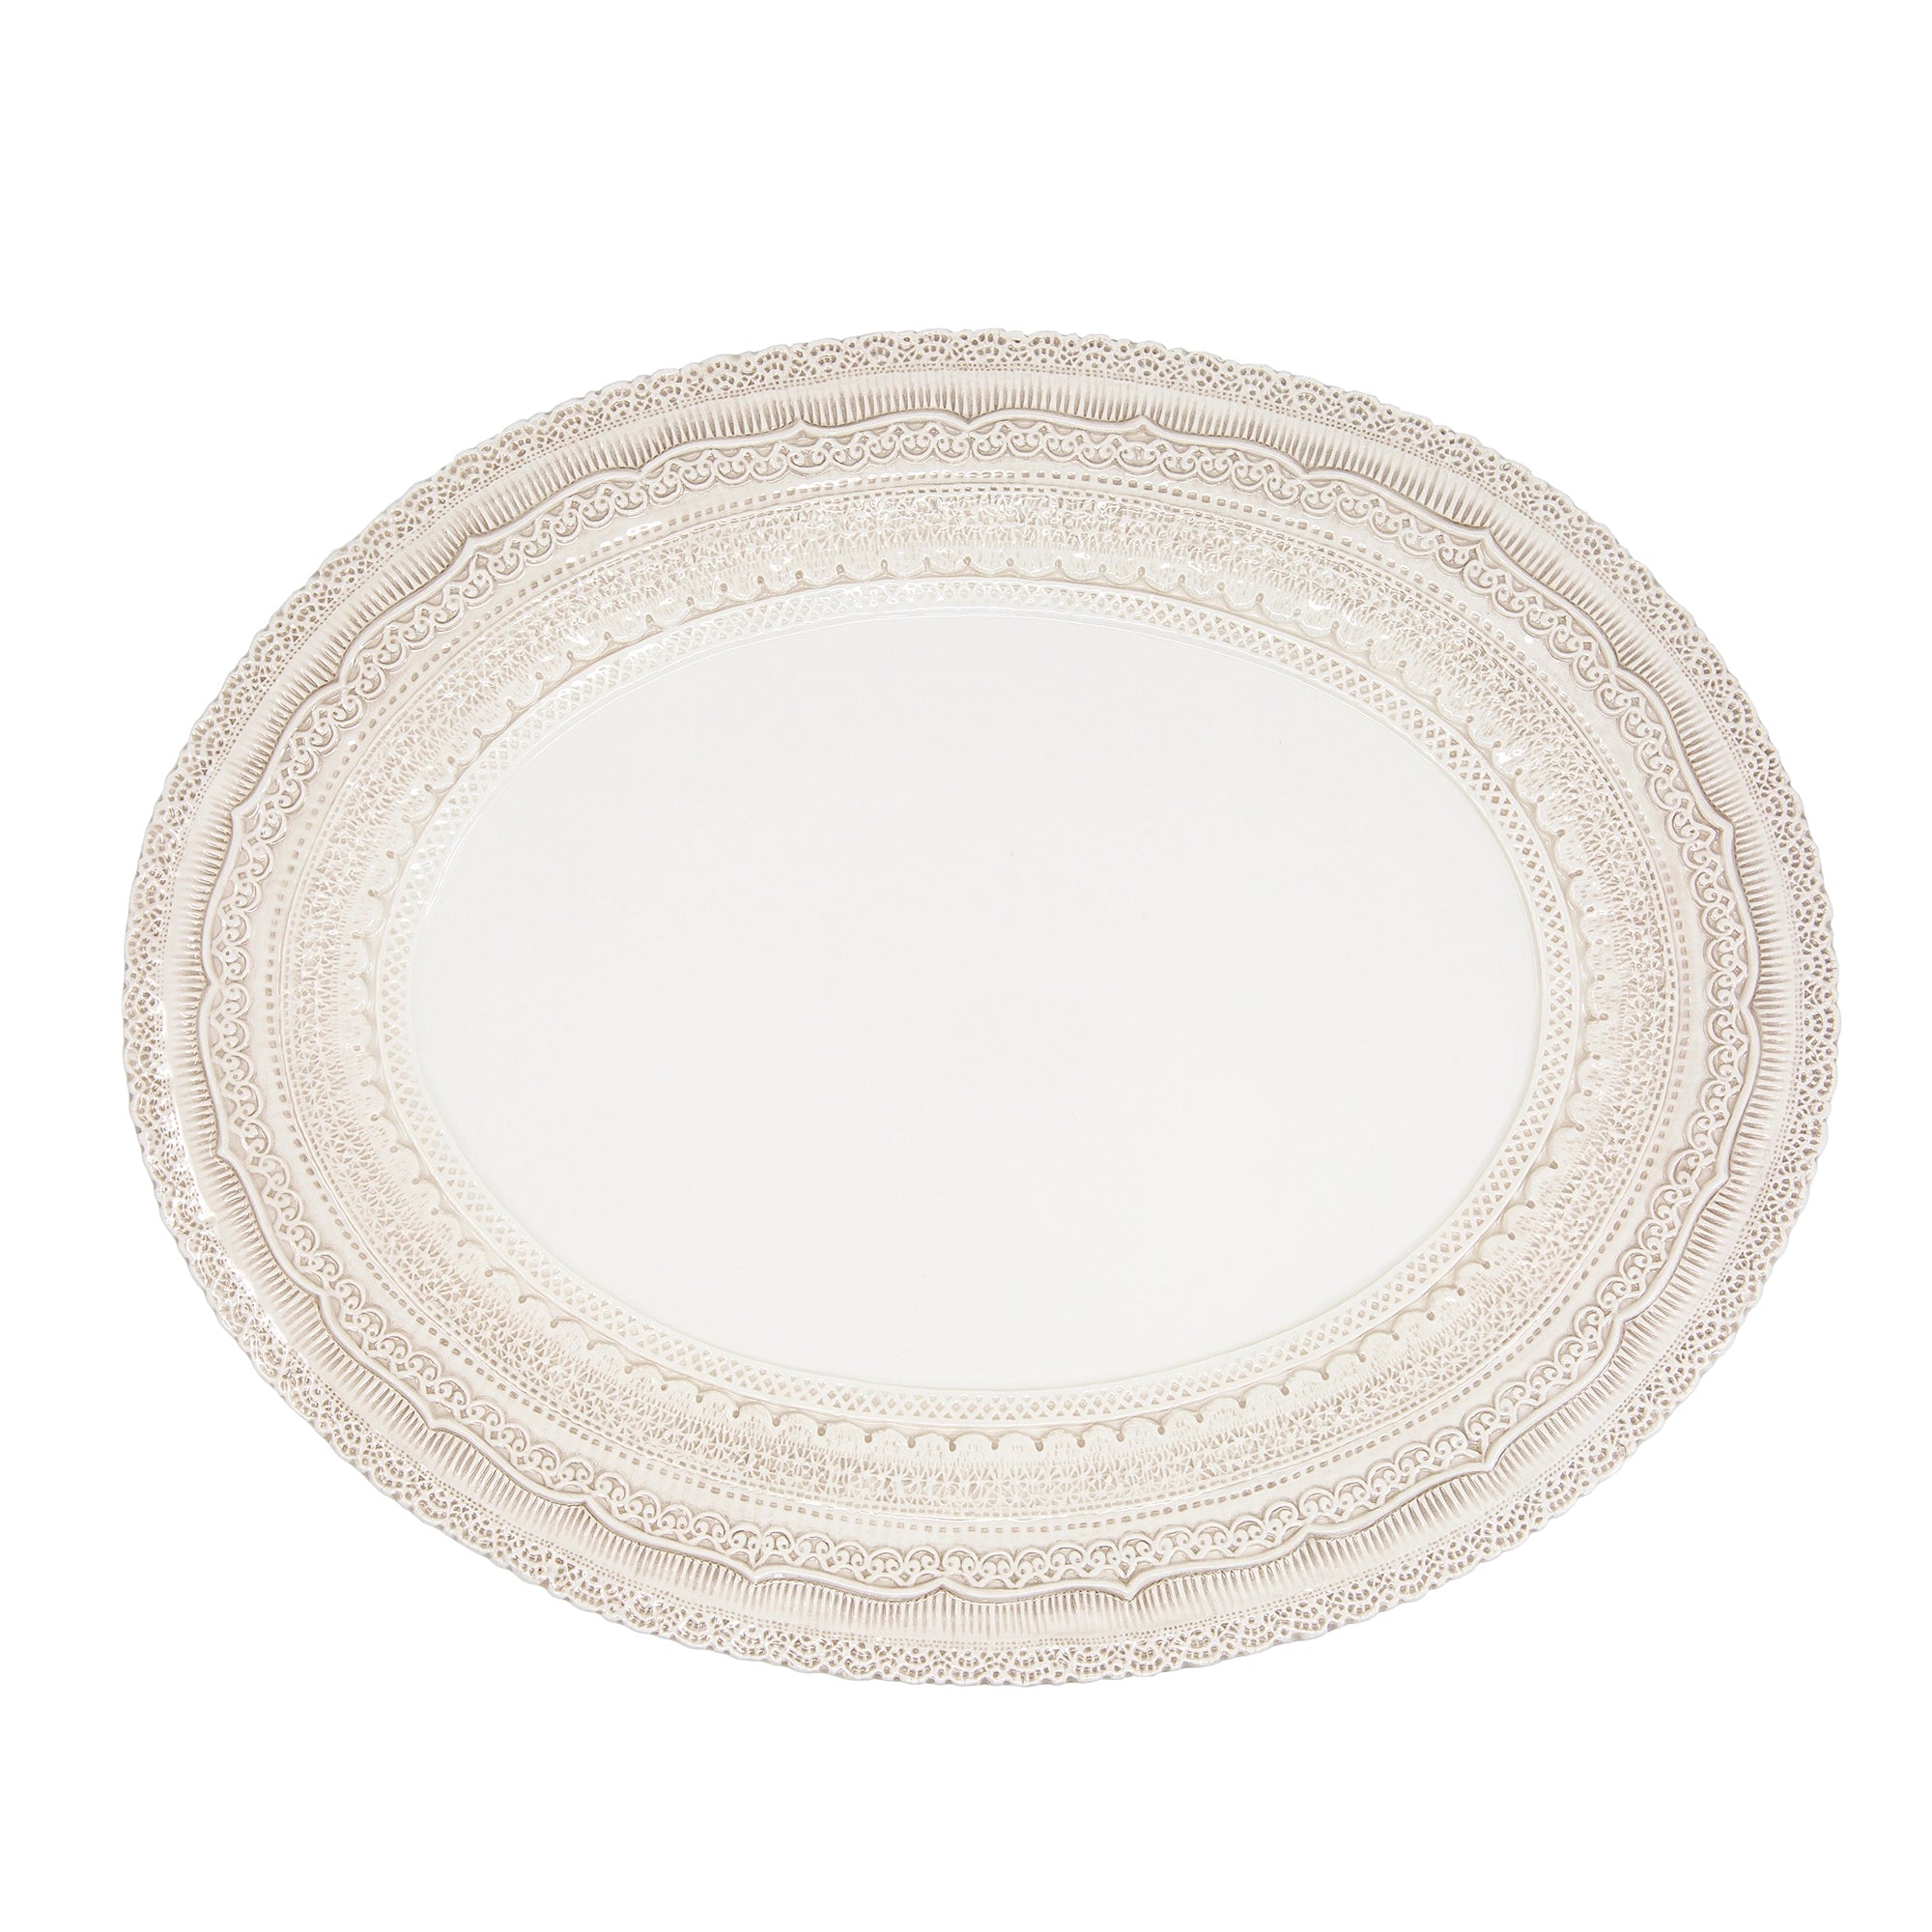 Finezza Cream Large Oval Platter